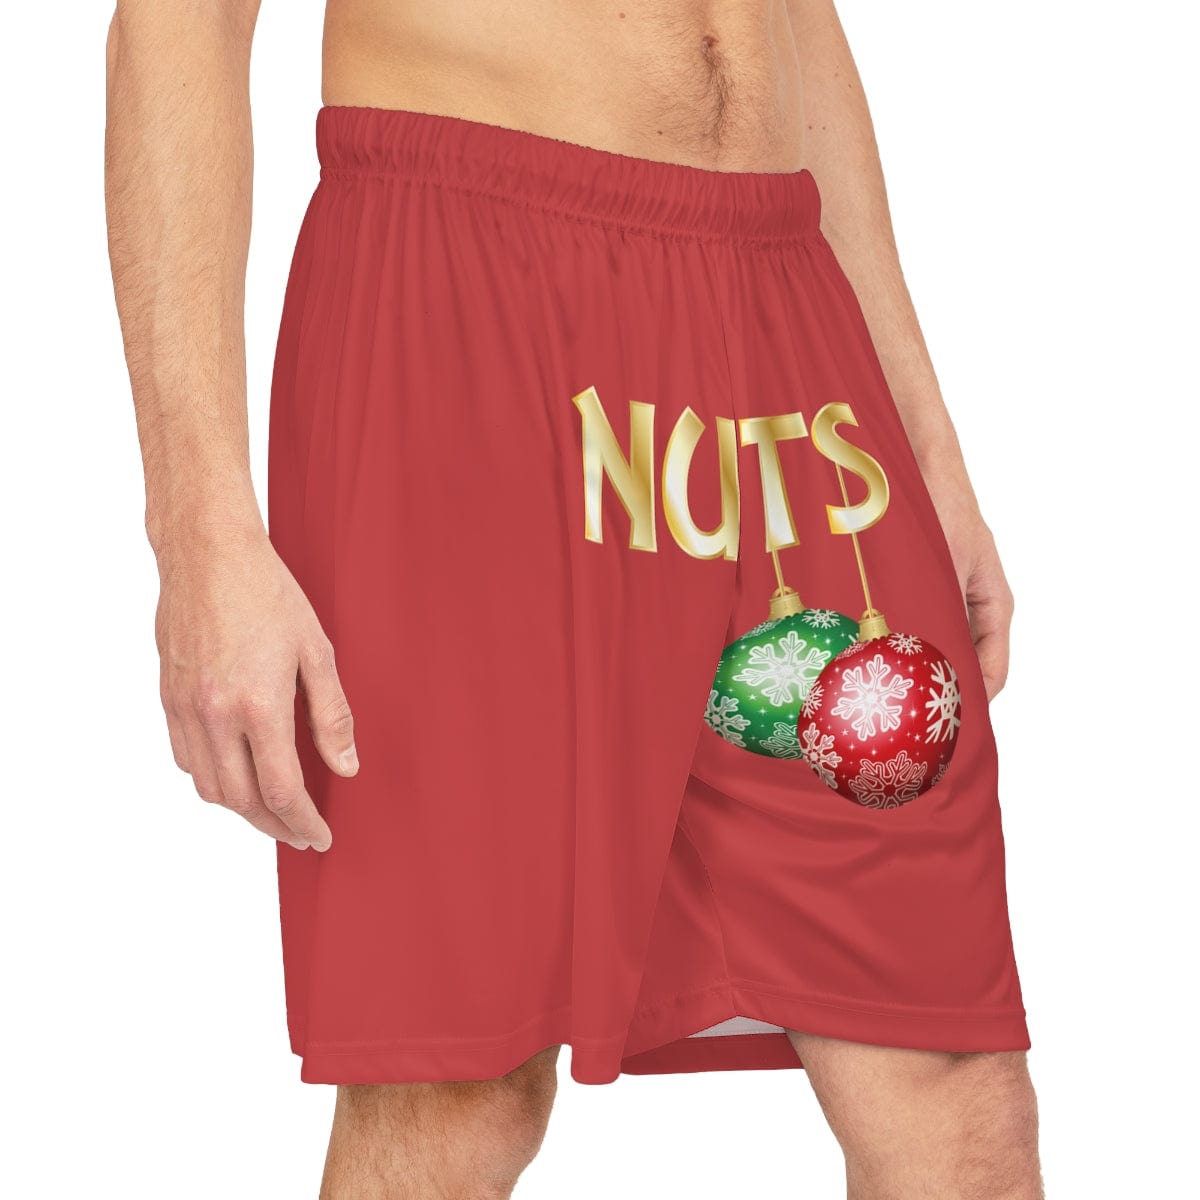 Nuts Basketball Shorts